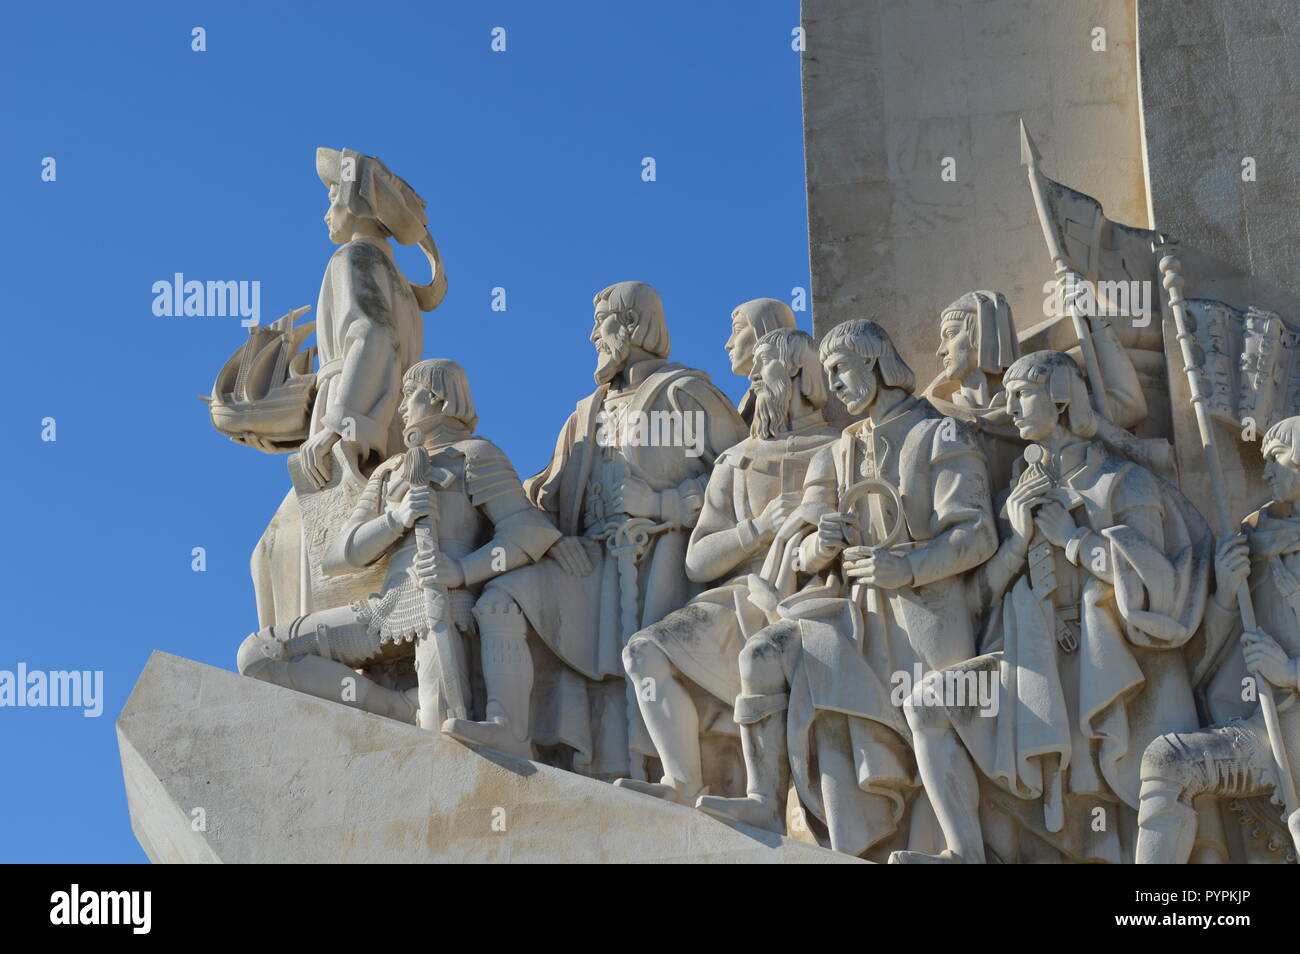 Das Denkmal der Entdeckungen auf den Tejo in Lissabon, Portugal, wurde zu Ehren von Heinrich dem Seefahrer gebaut, feiert das Alter der Erforschung. Stockfoto